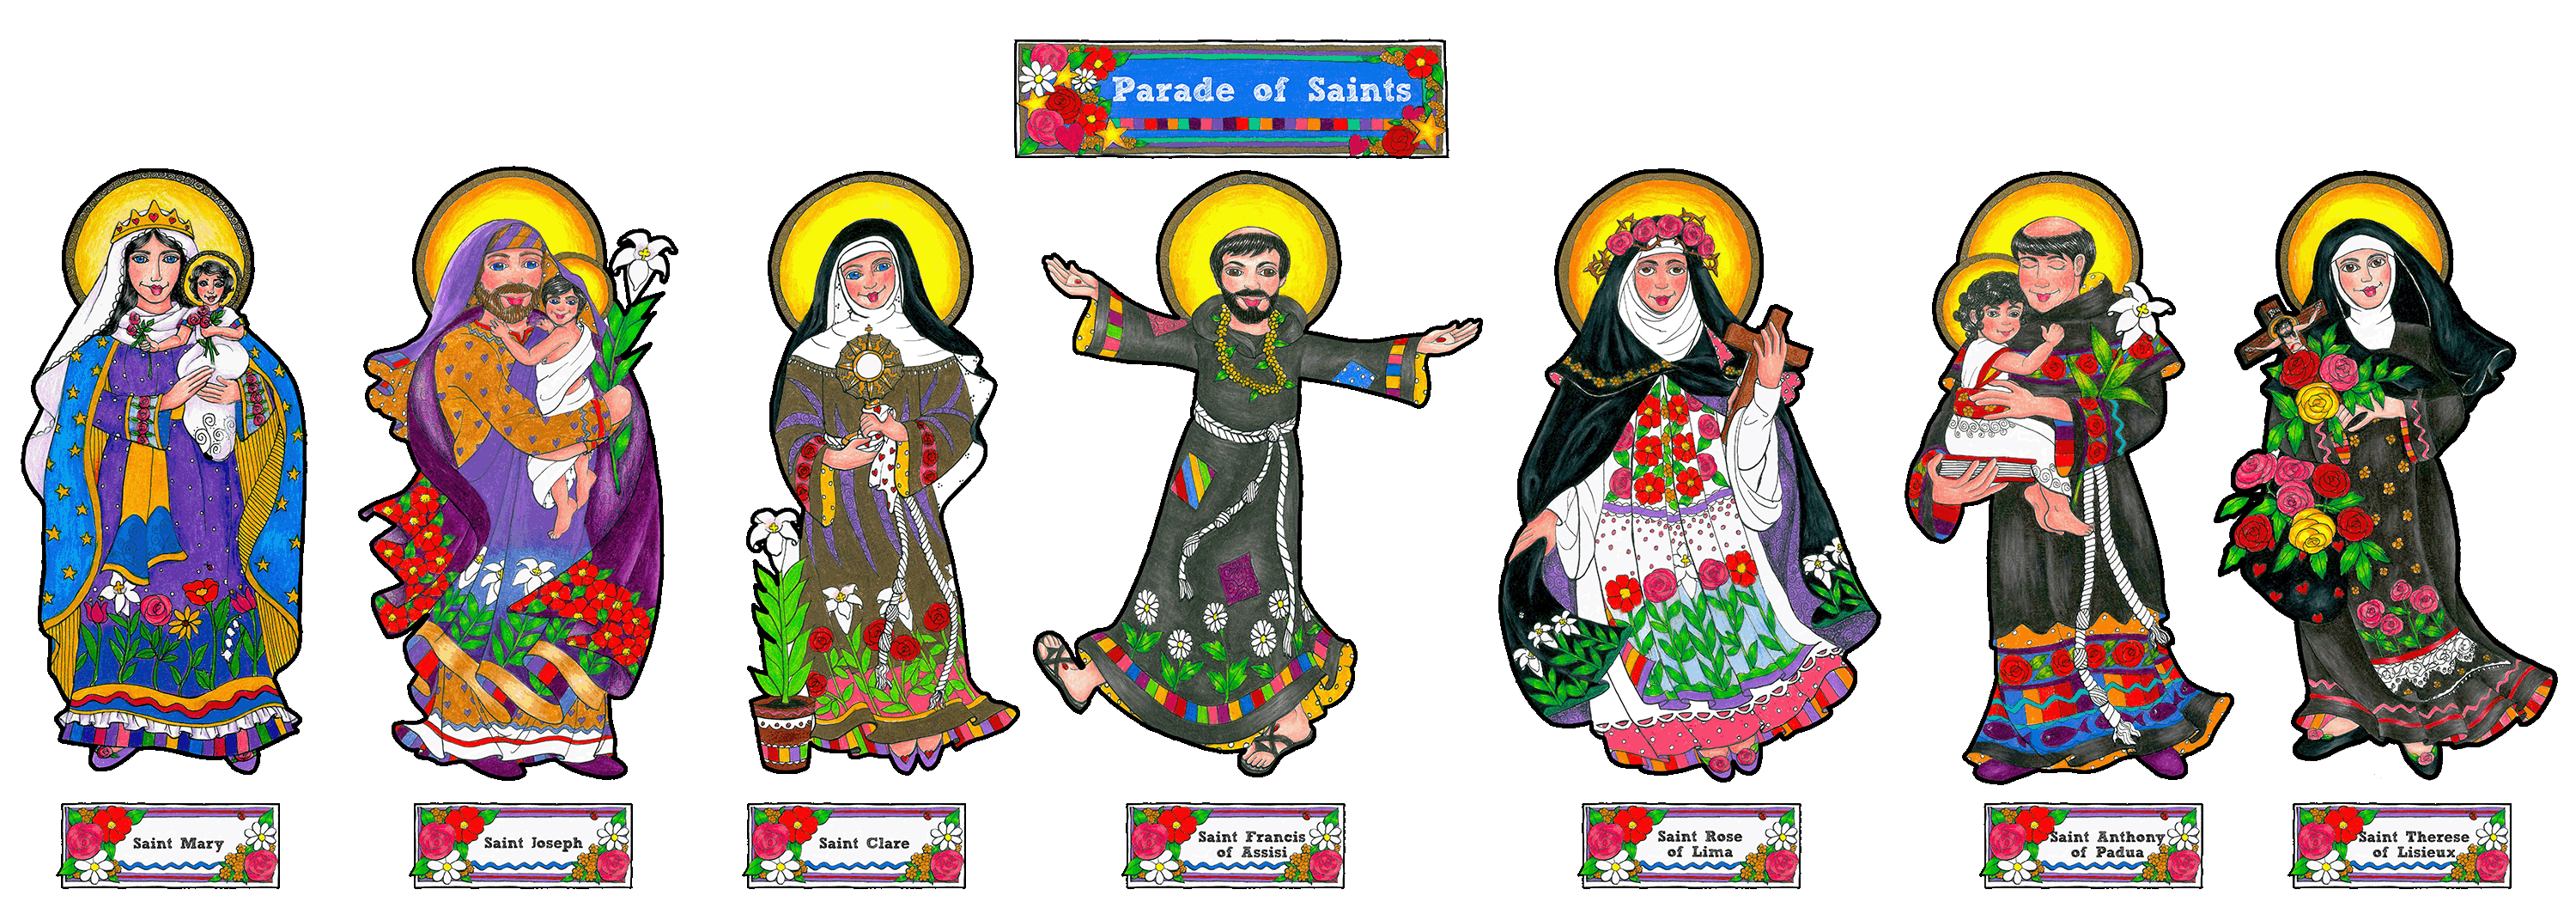 Boho Parade of Saints